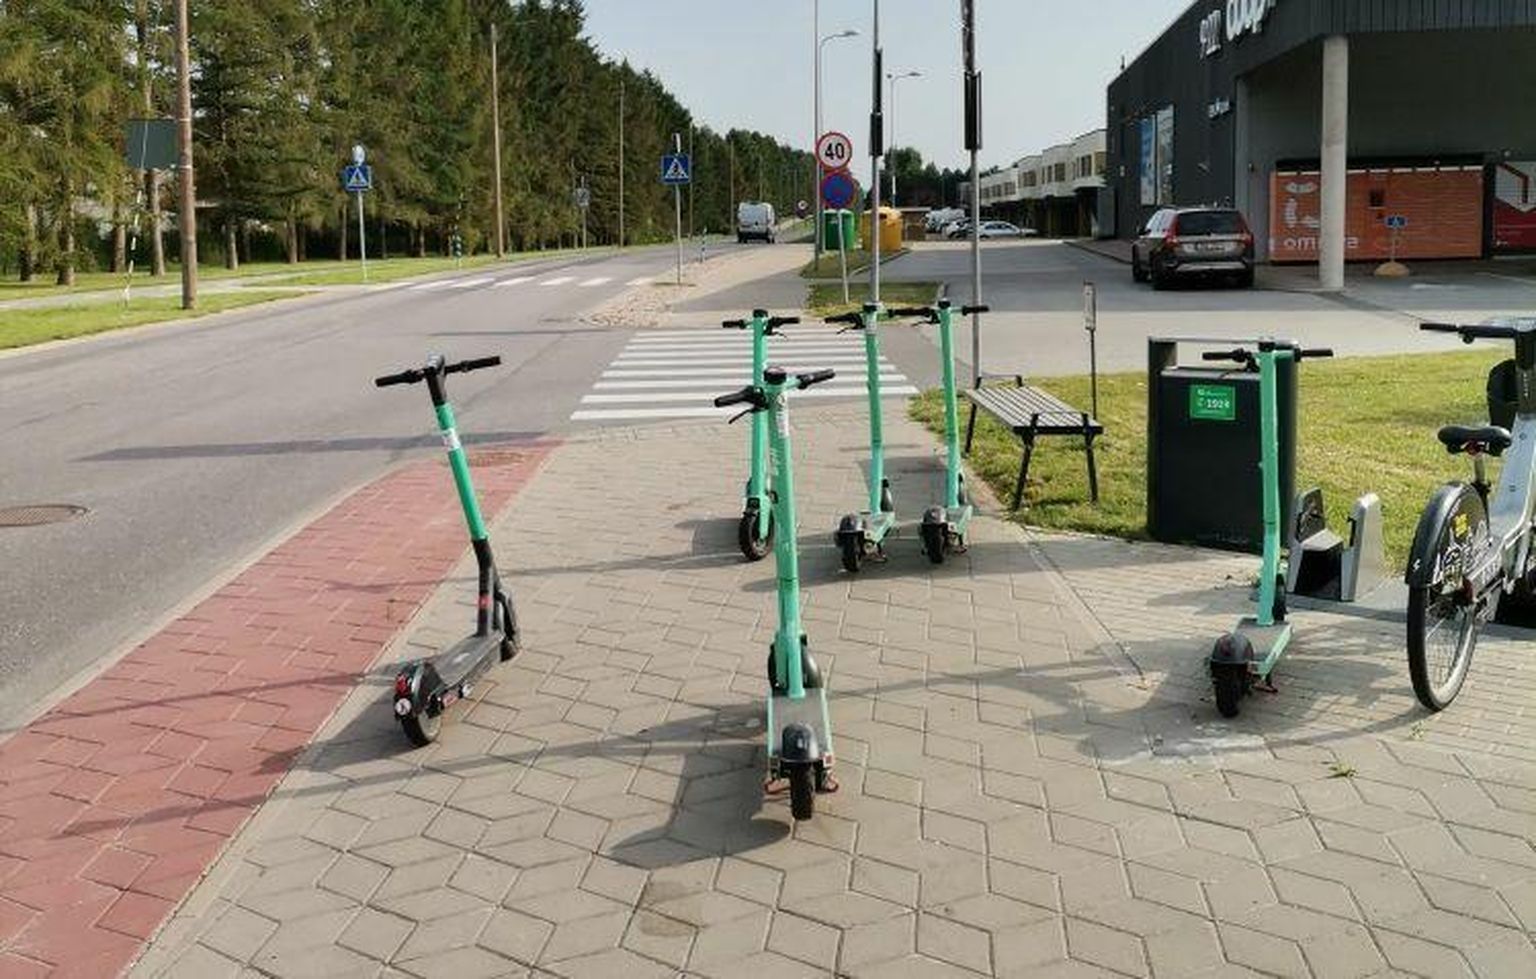 Летом в Тарту довольно часто случаются ситуации, когда пешеходам трудно пройти из-за неаккуратно припаркованных на тротуаре самокатов.